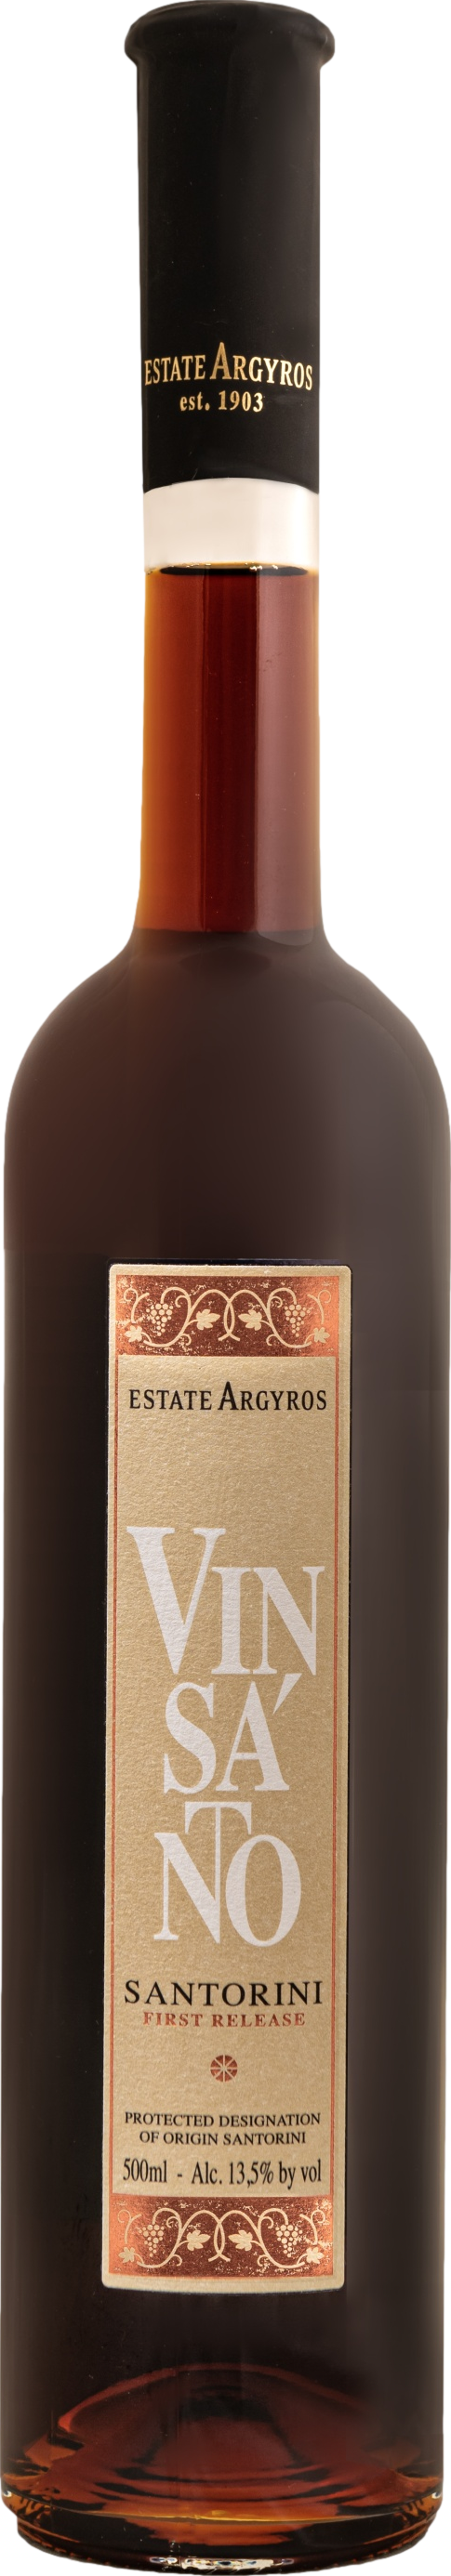 Estate Argyros Vinsanto First Release 2015 Bílé 13.5% 0.5 l